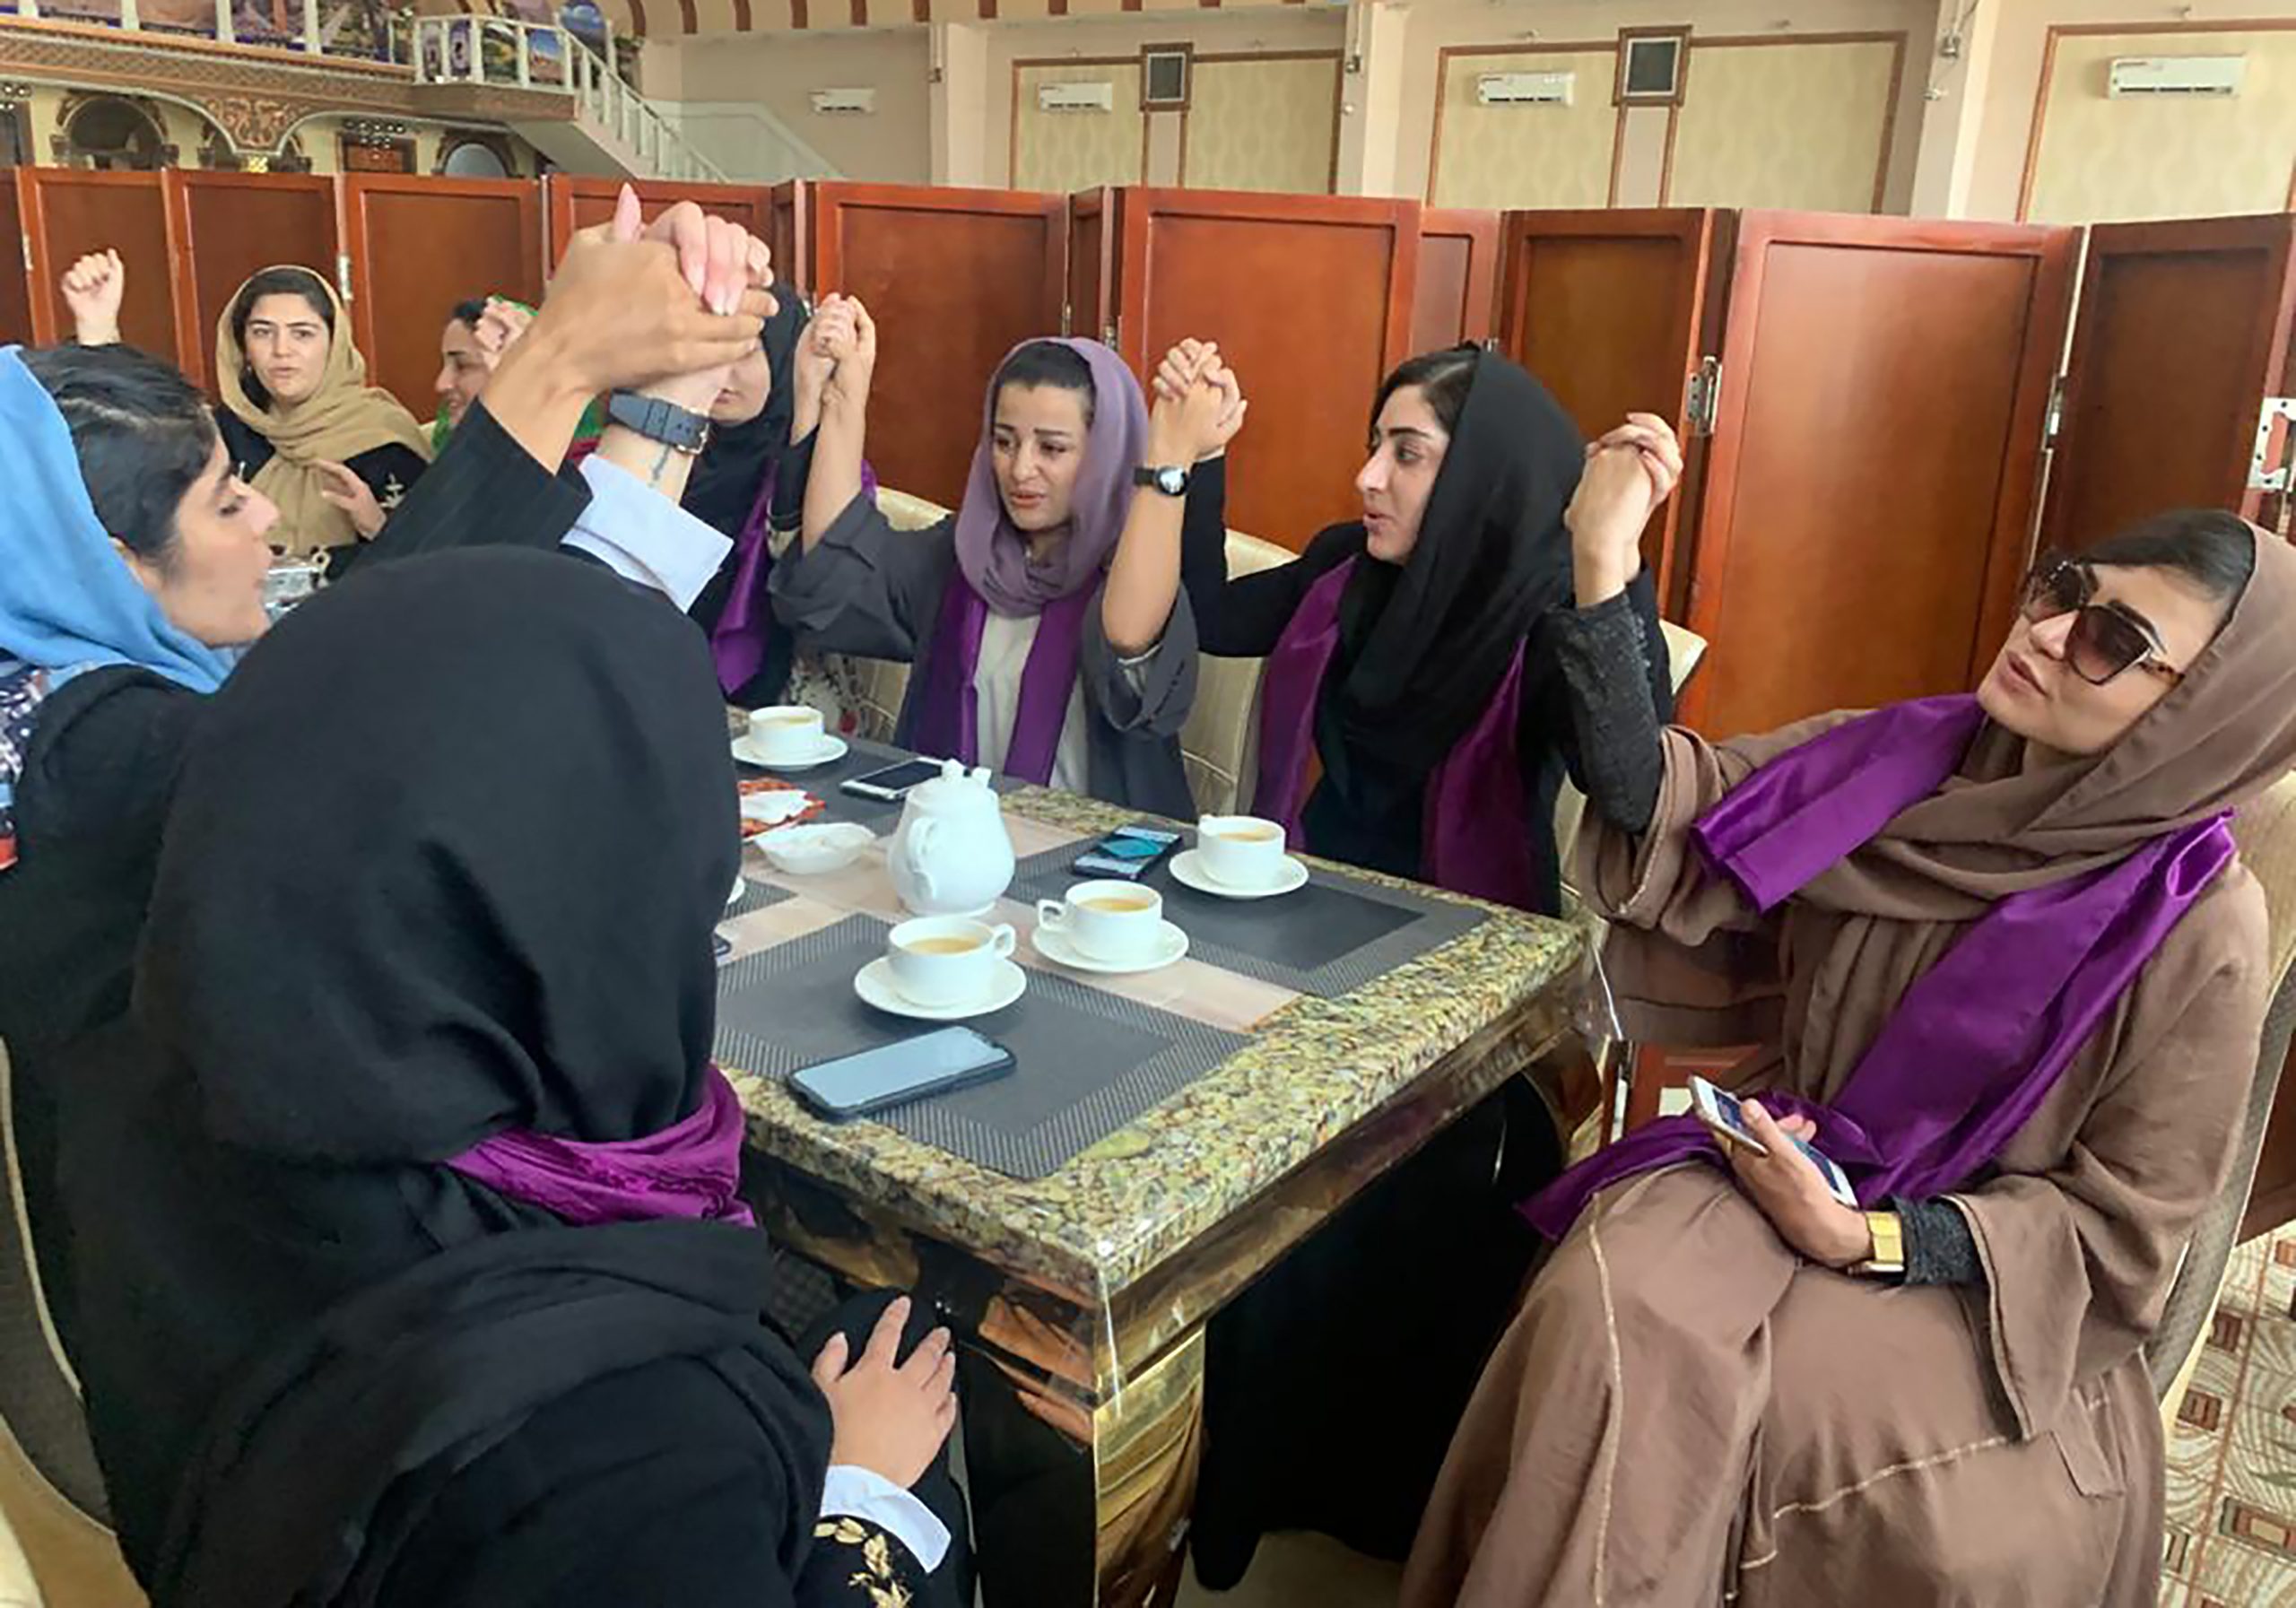 阿富汗女性上街争取平等权利 塔利班特种部队朝空鸣枪驱散